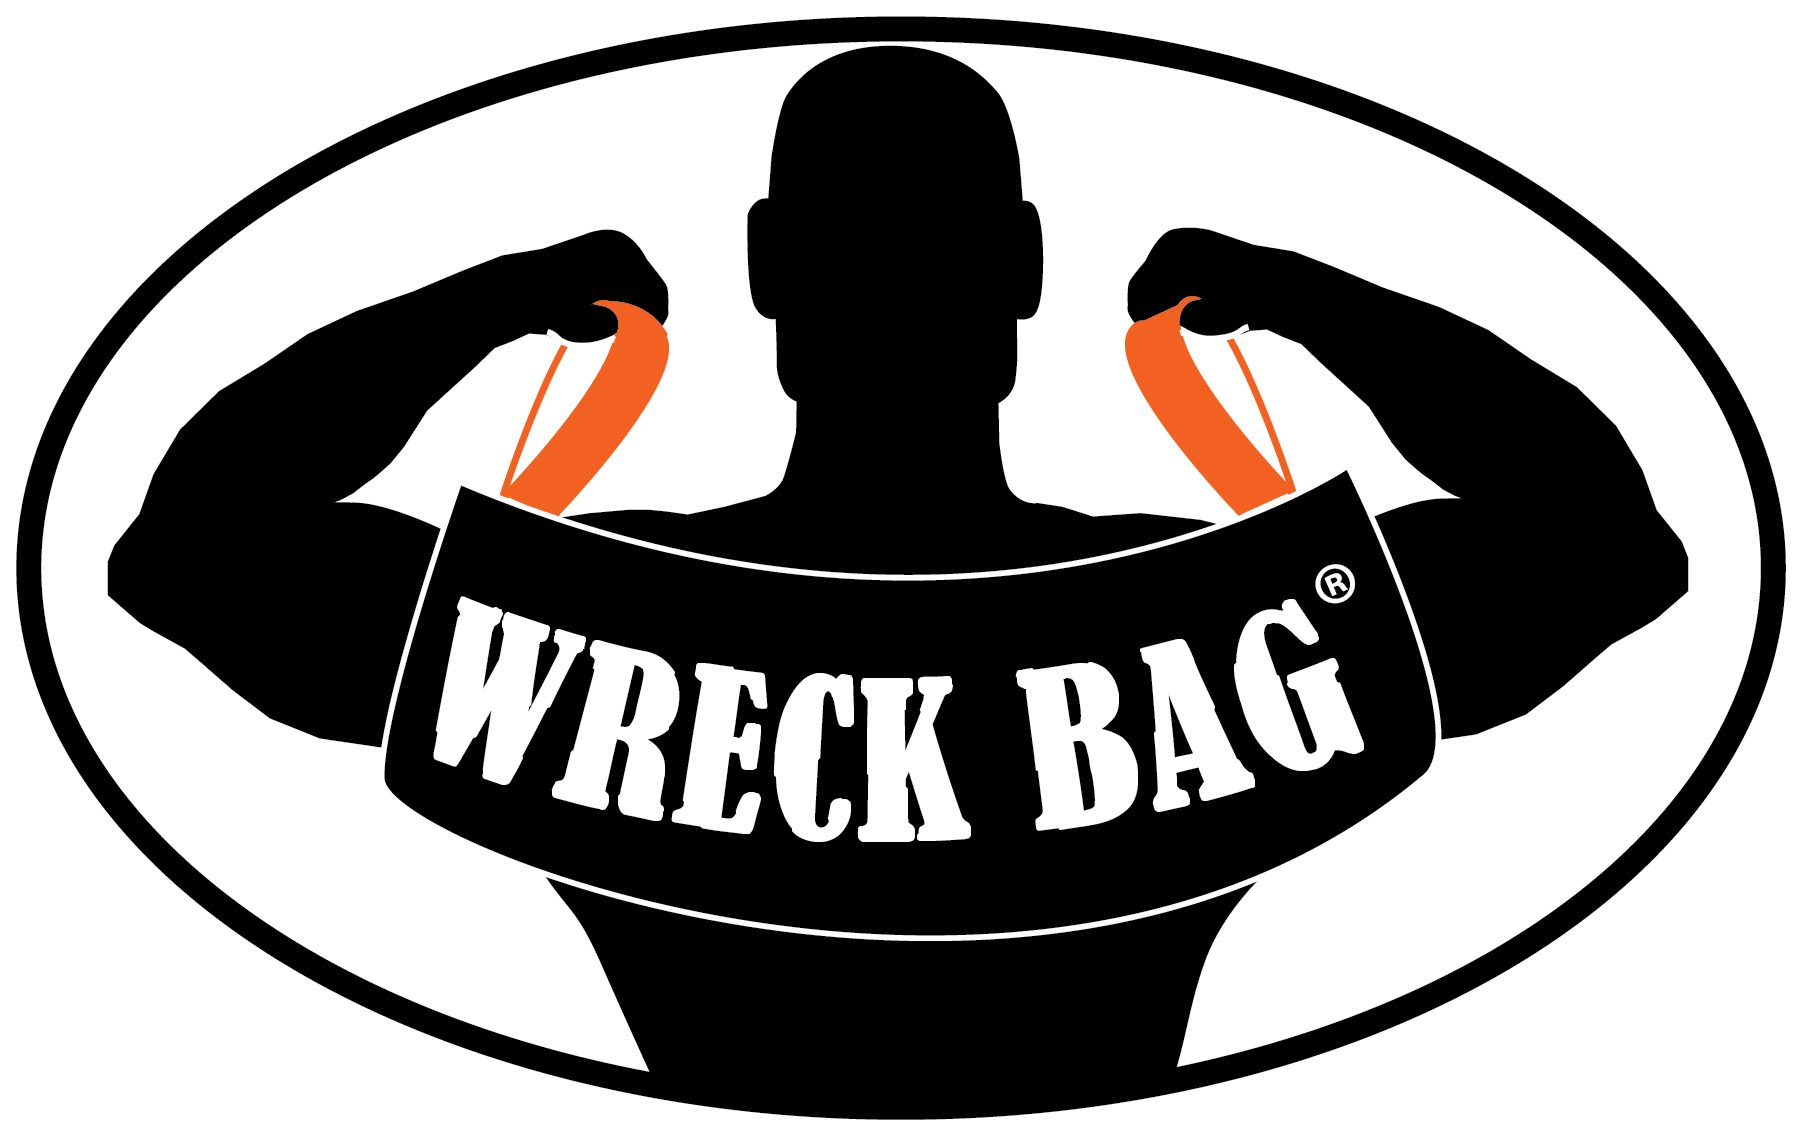 Wreck Bag - Wreck Bag Logo (1798x1135)